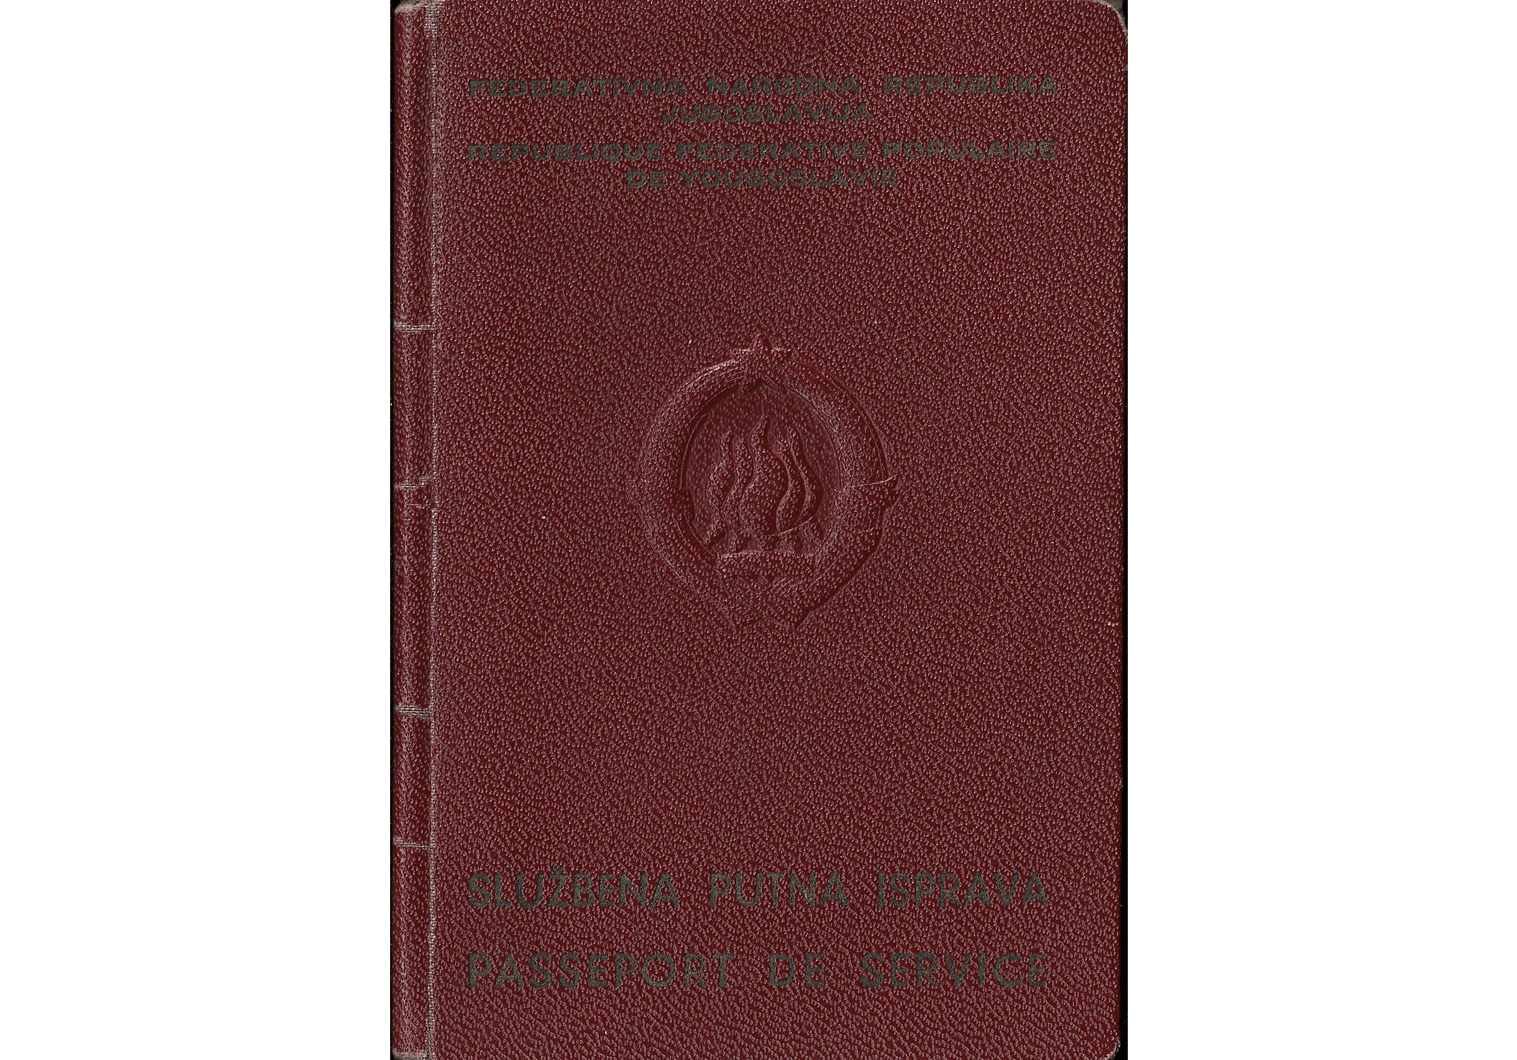 1952 Cold-War service passport